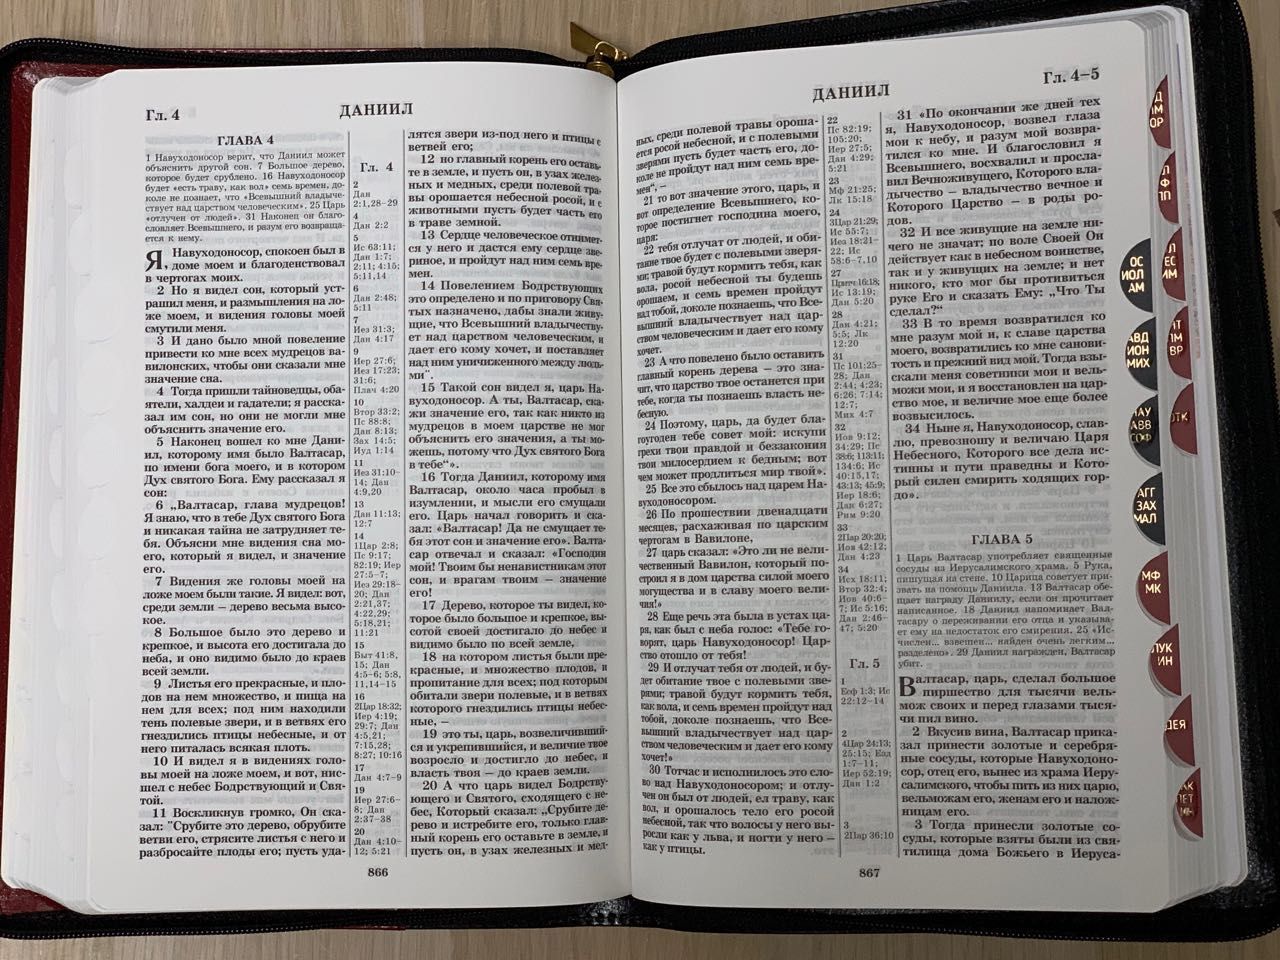 БИБЛИЯ 077DTzti формат, переплет из натуральной кожи на молнии с индексами, надпись золотом "Библия", цвет черный/ белый, большой формат, 180*260 мм, цветные карты, крупный шрифт